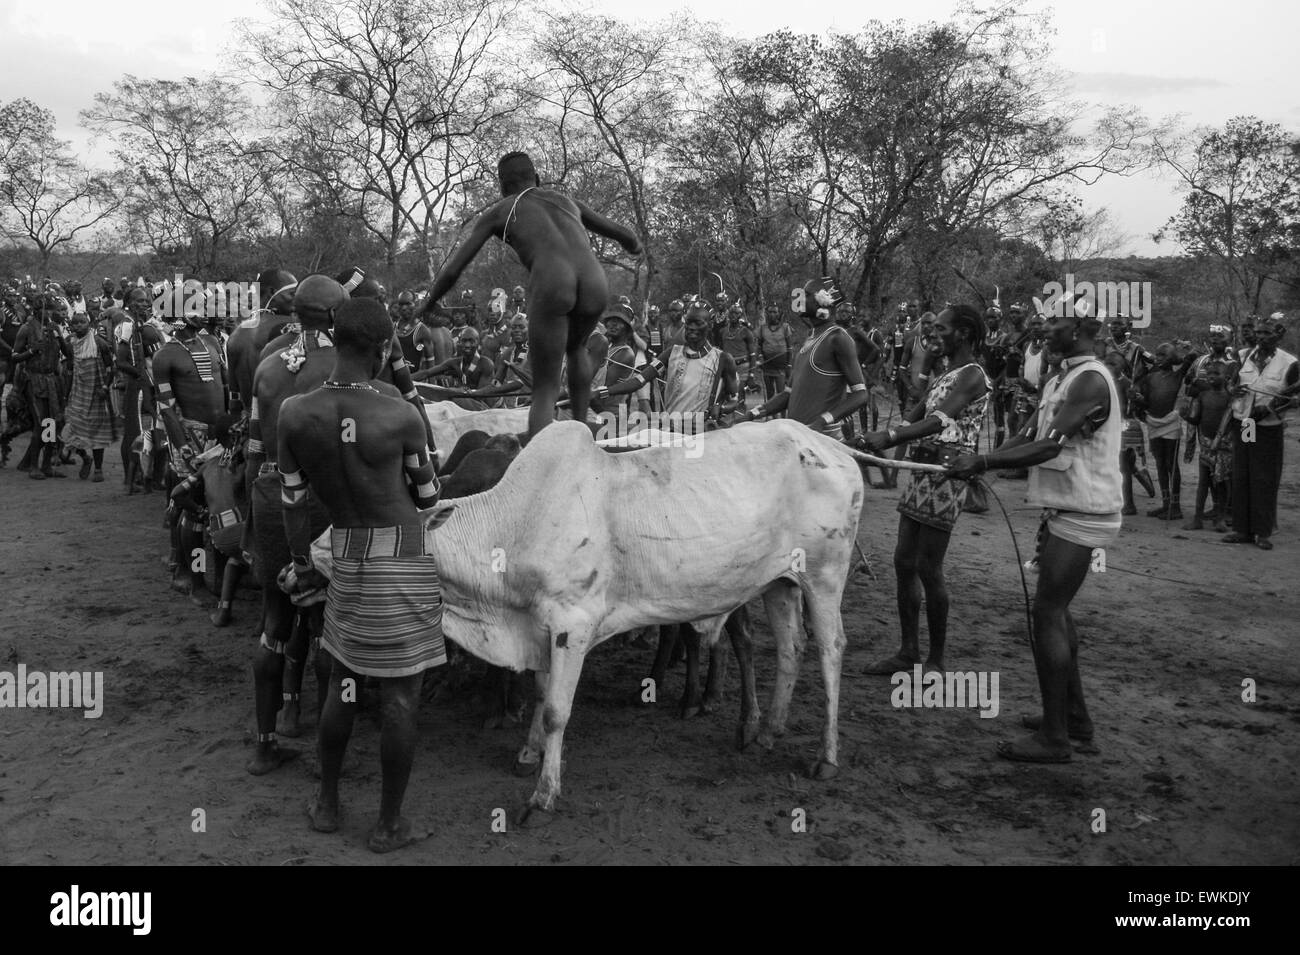 Bull traditionnelle cérémonie de saut en vallée de l'Omo, en Ethiopie. Banque D'Images